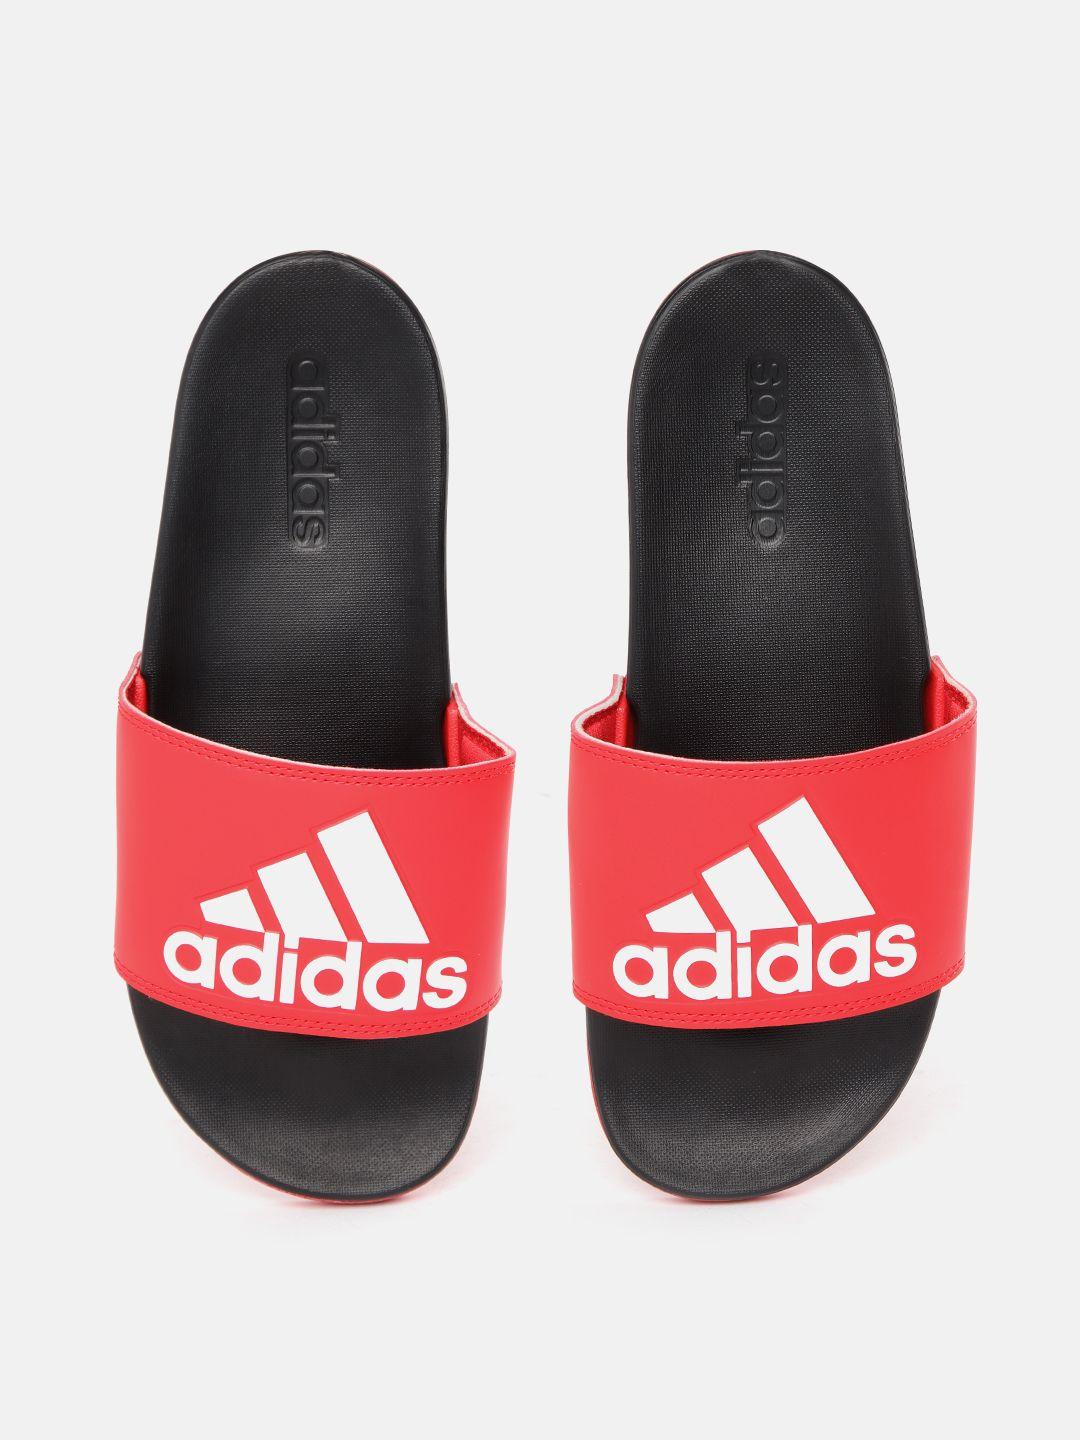 adidas unisex red & black  adilette comfort printed sliders